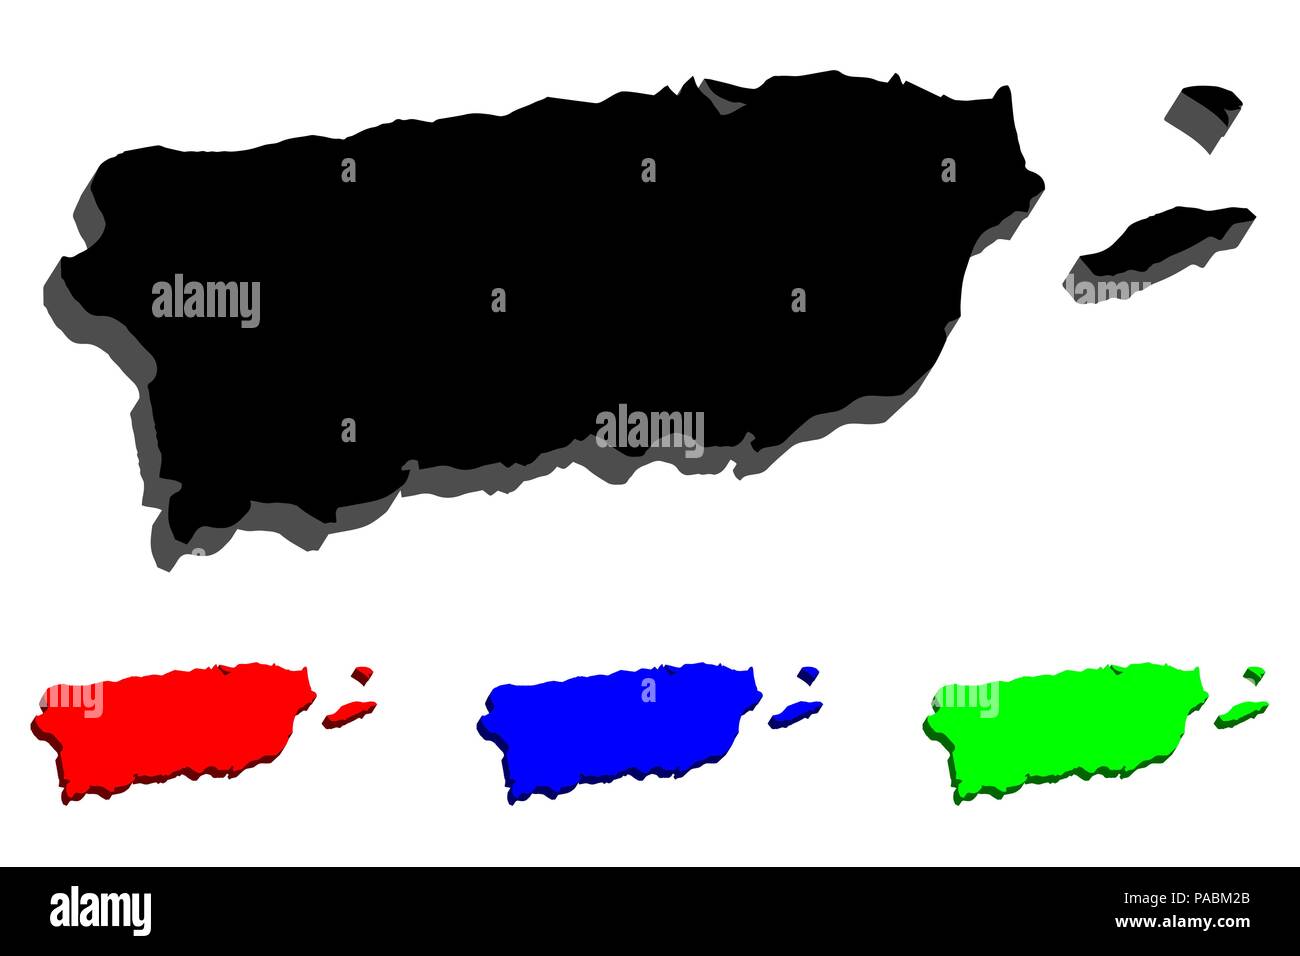 Mappa 3D di Puerto Rico (Commonwealth of Puerto Rico, Porto Rico) - nero, rosso, blu e verde - illustrazione vettoriale Illustrazione Vettoriale